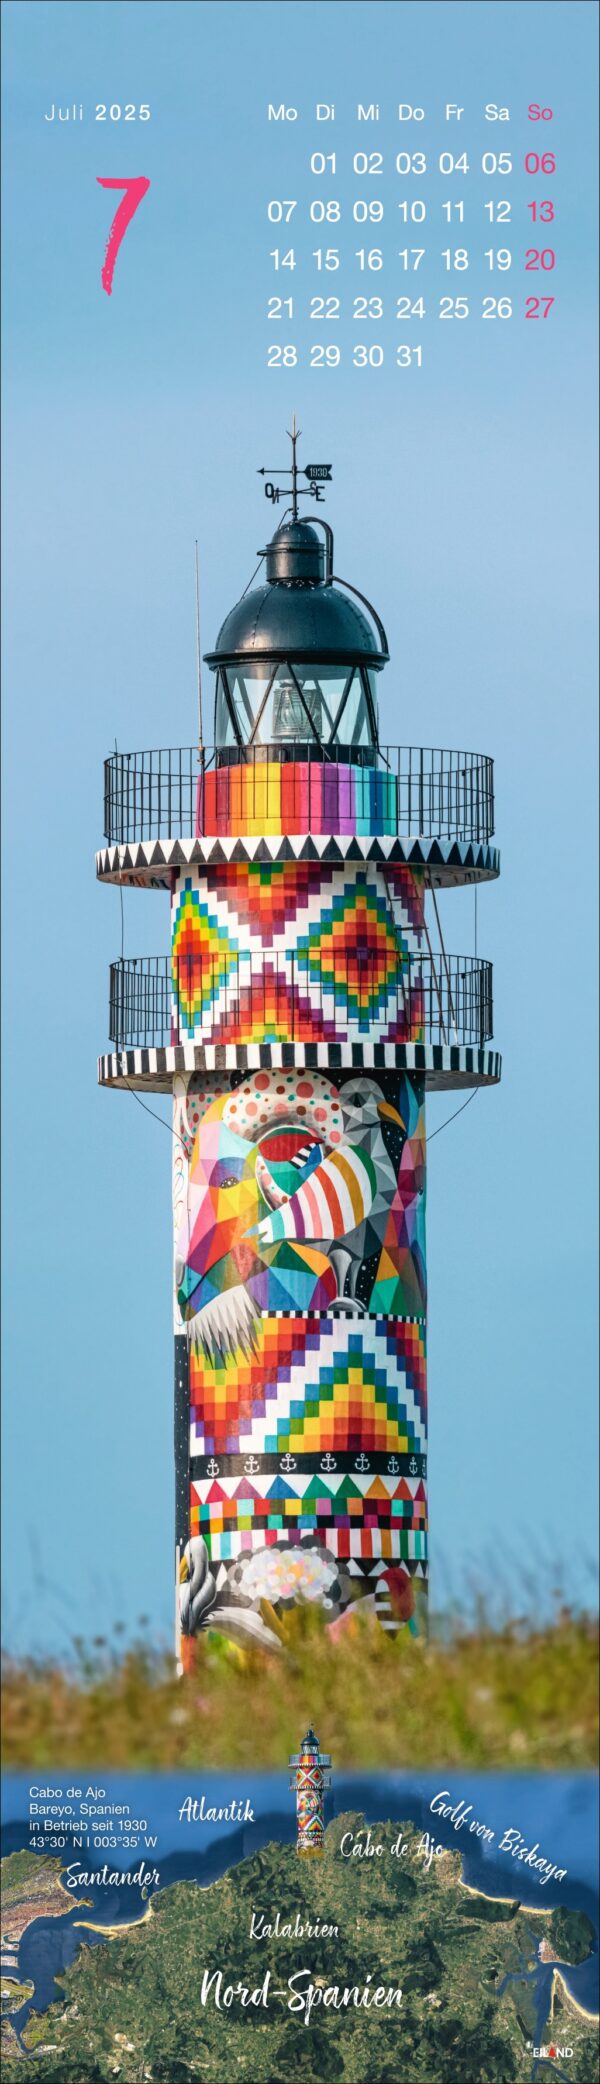 Ein vertikaler LongEiland - Kalender 2025 für Juli mit einem Leuchtturm, der mit einem komplizierten, farbenfrohen Mosaikmuster verziert ist. Die Kalenderdaten sind rechtsbündig ausgerichtet, mit deutschen Abkürzungen für die Monate.